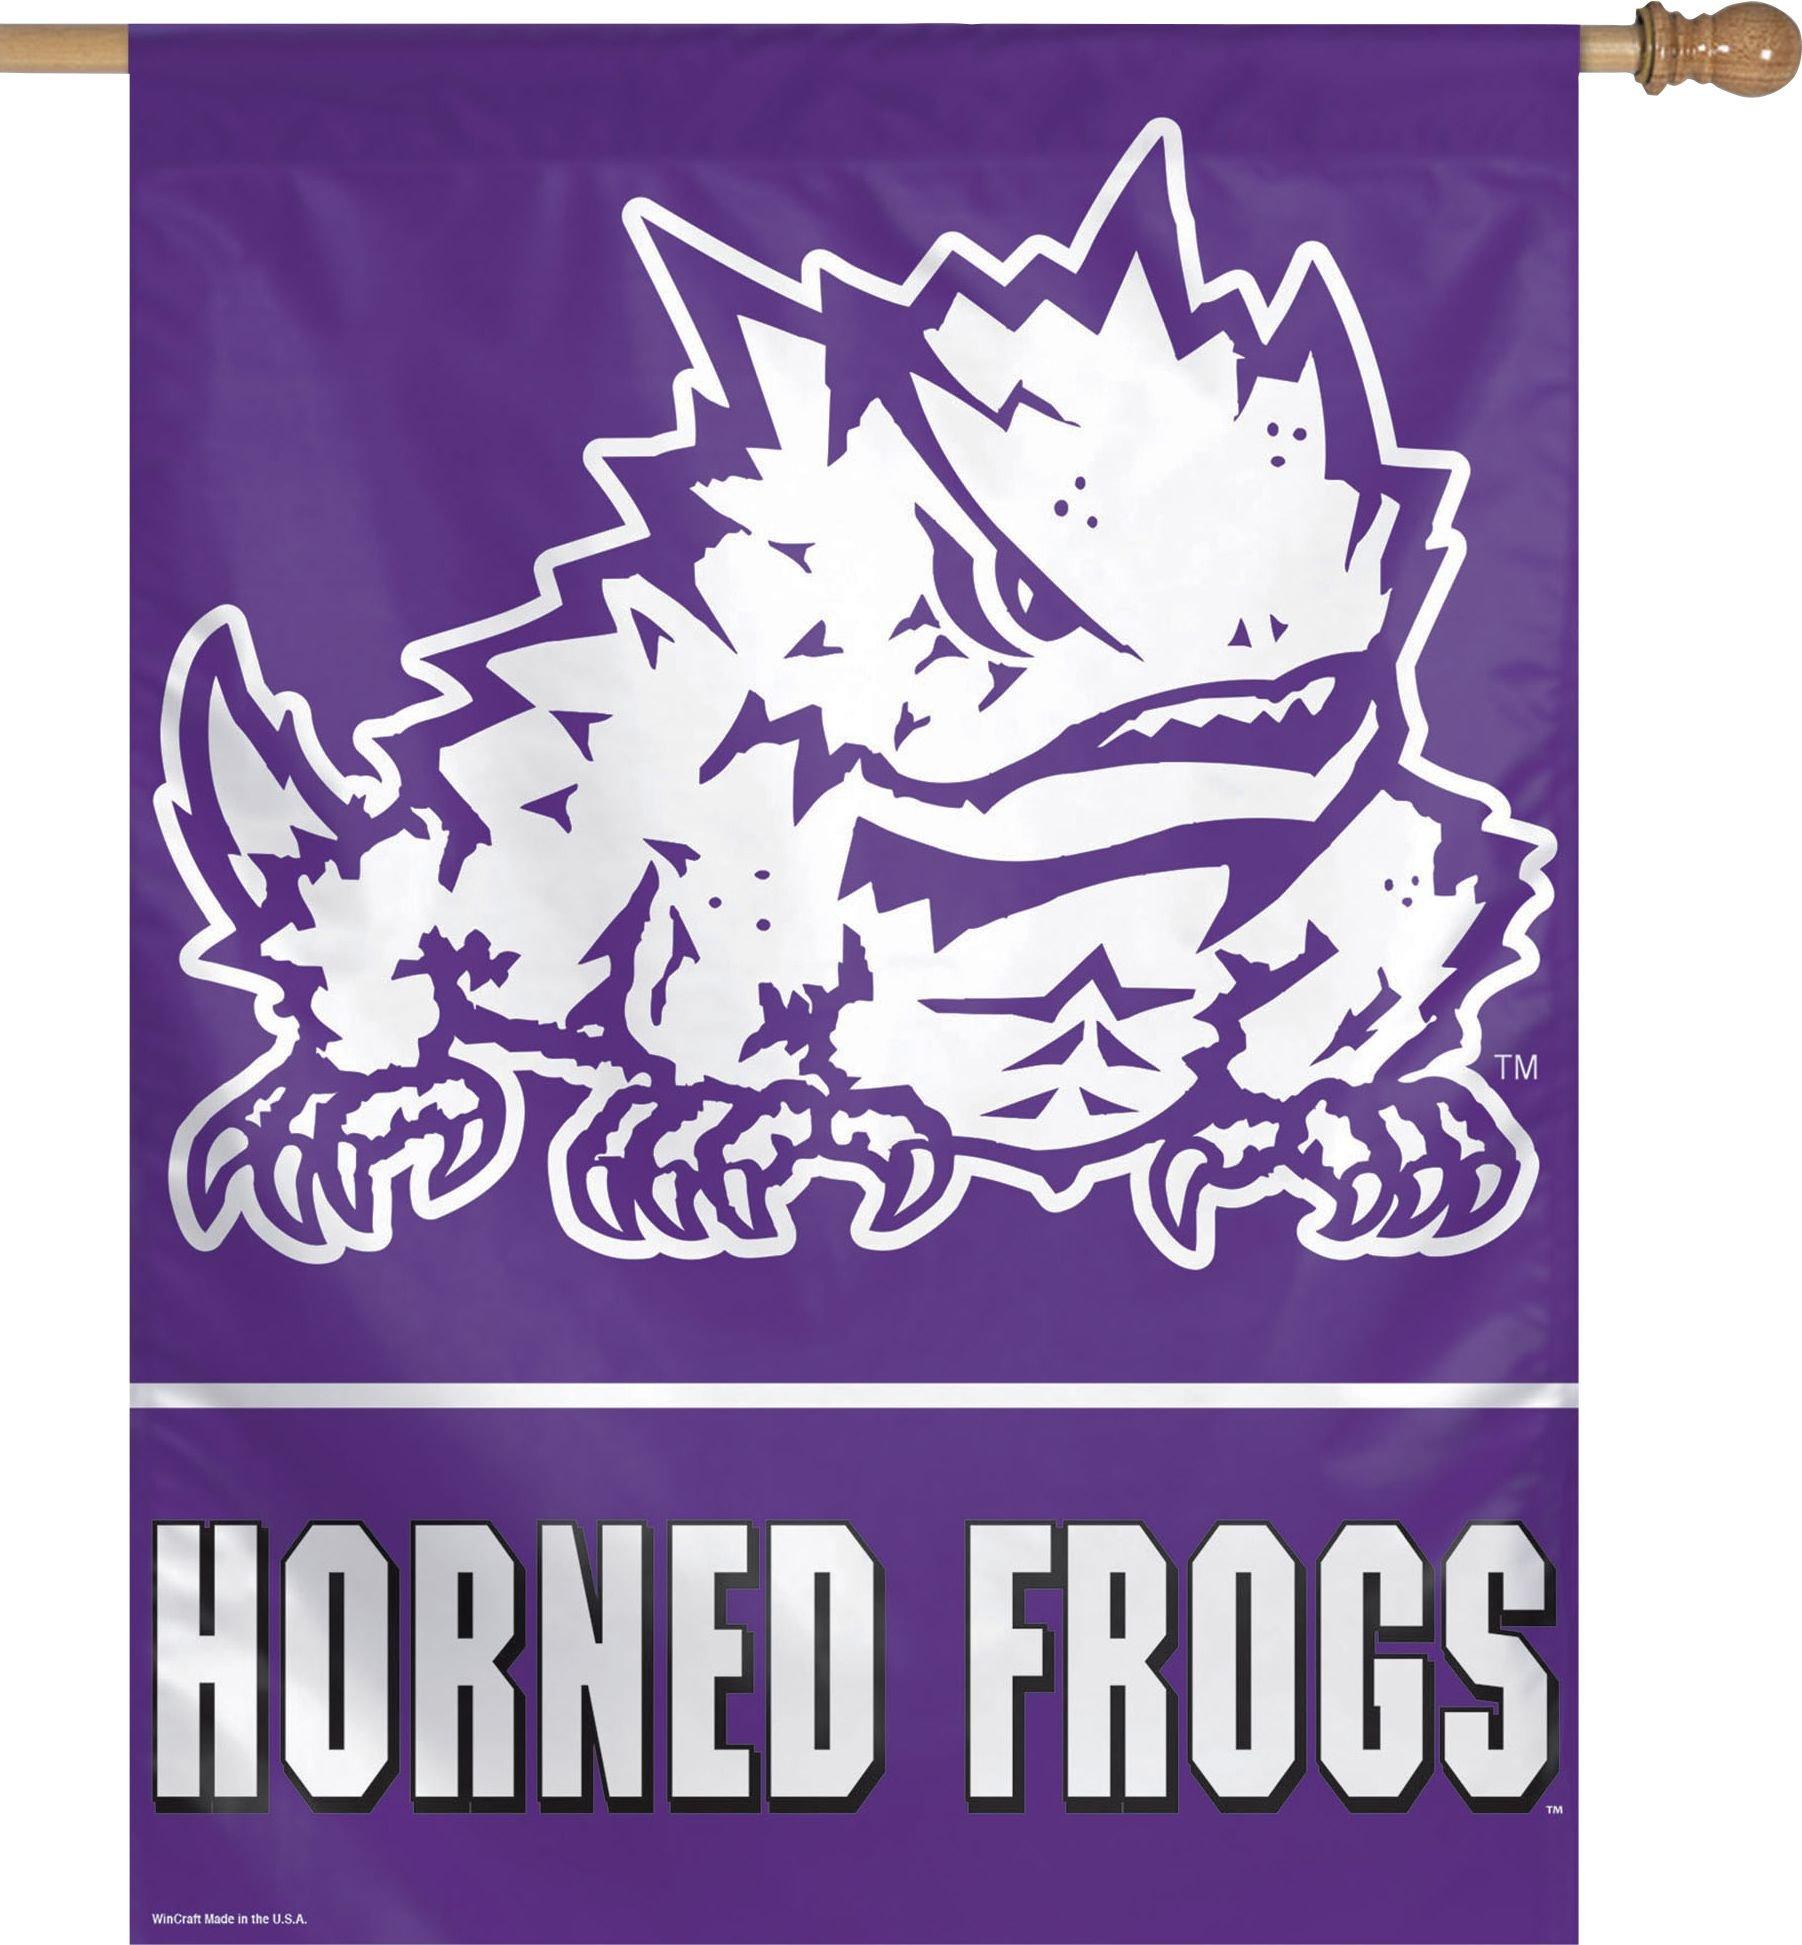 TCU Horned Frogs Banner Flag